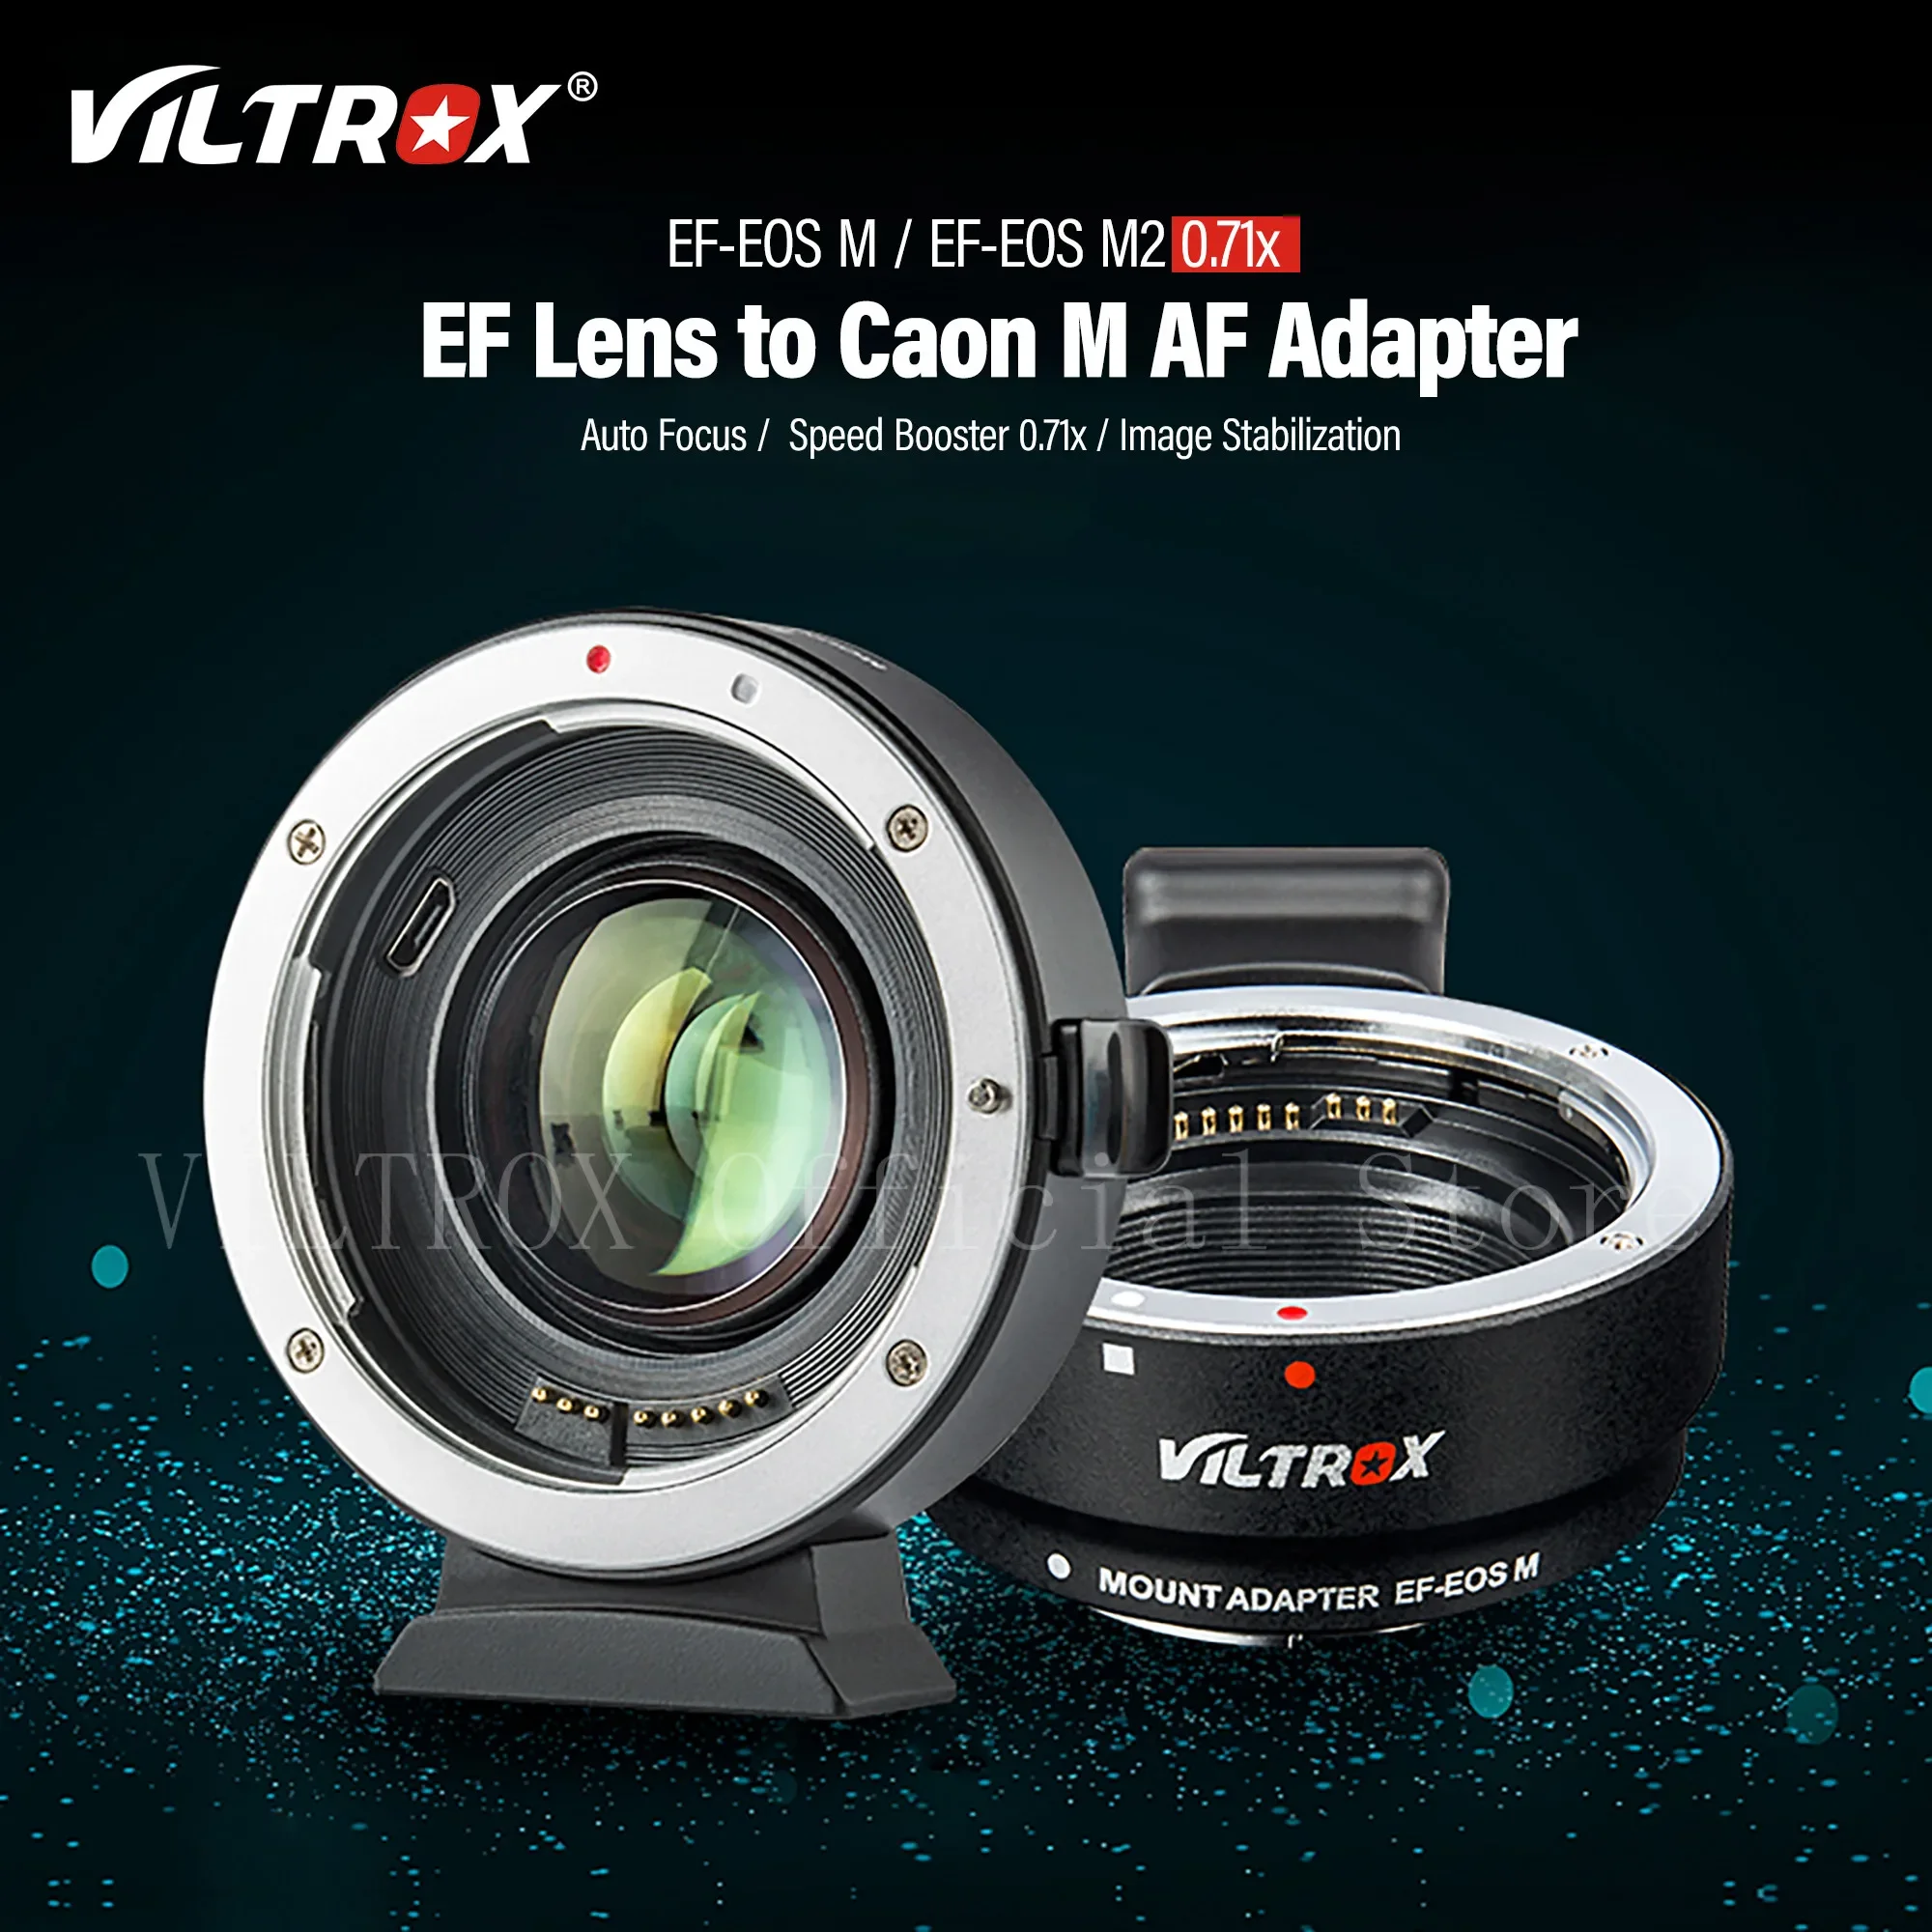 

Адаптер для объектива Viltrox Canon EOS M с автофокусом 0.71x, редуктор фокусного расстояния, усилитель скорости для камеры Canon EF на M M6 M200 M50 M5